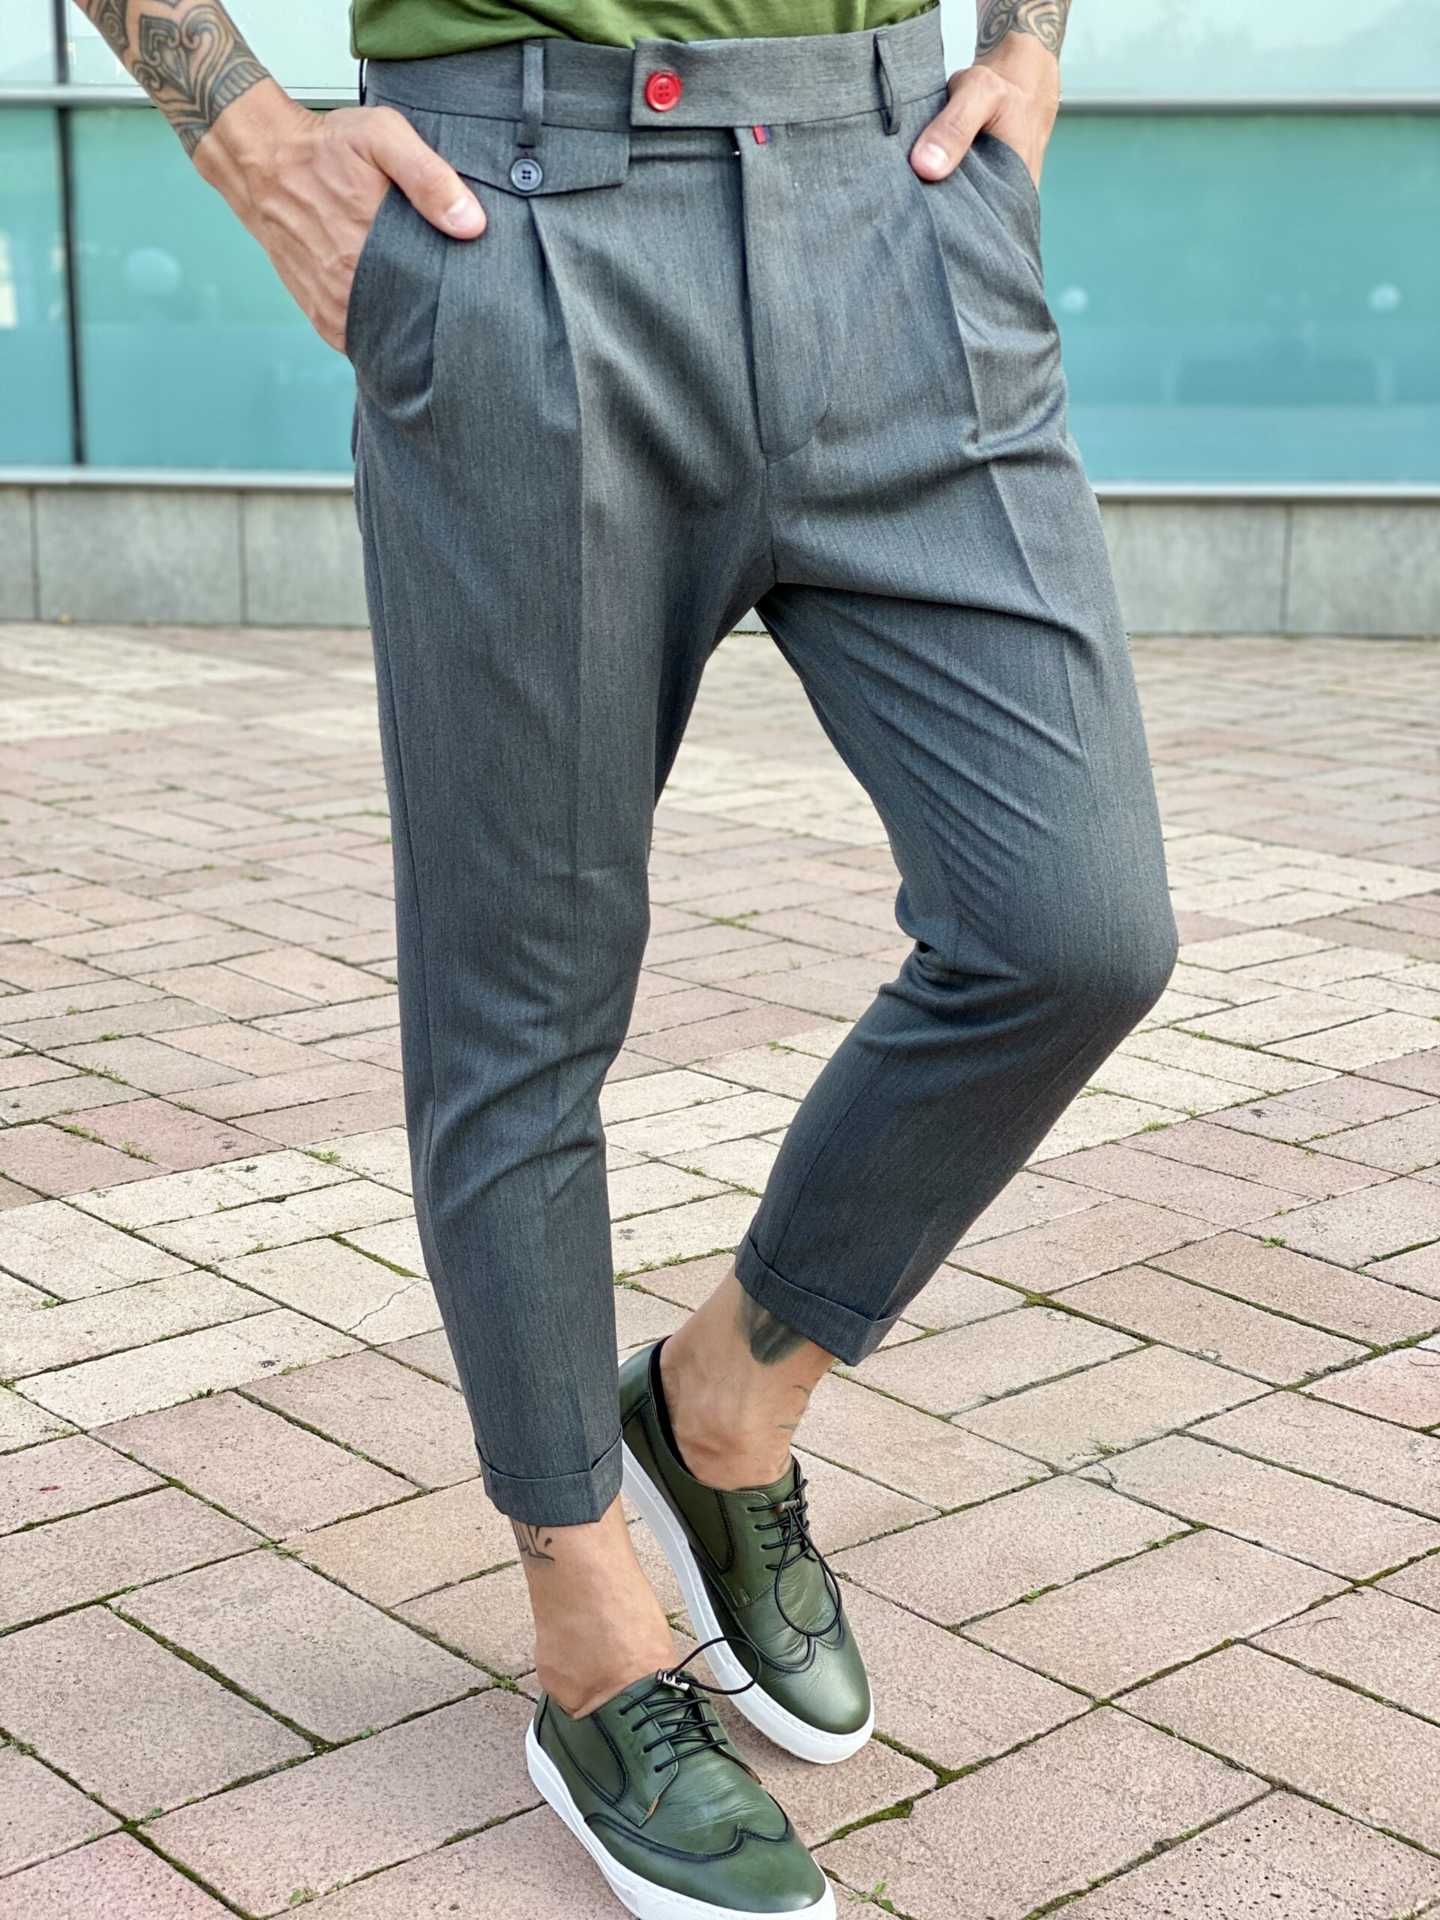 Стильные мужские брюки серого цвета, элегантно зауженные к низу. Арт.:2474– купить в магазине мужской одежды Smartcasuals